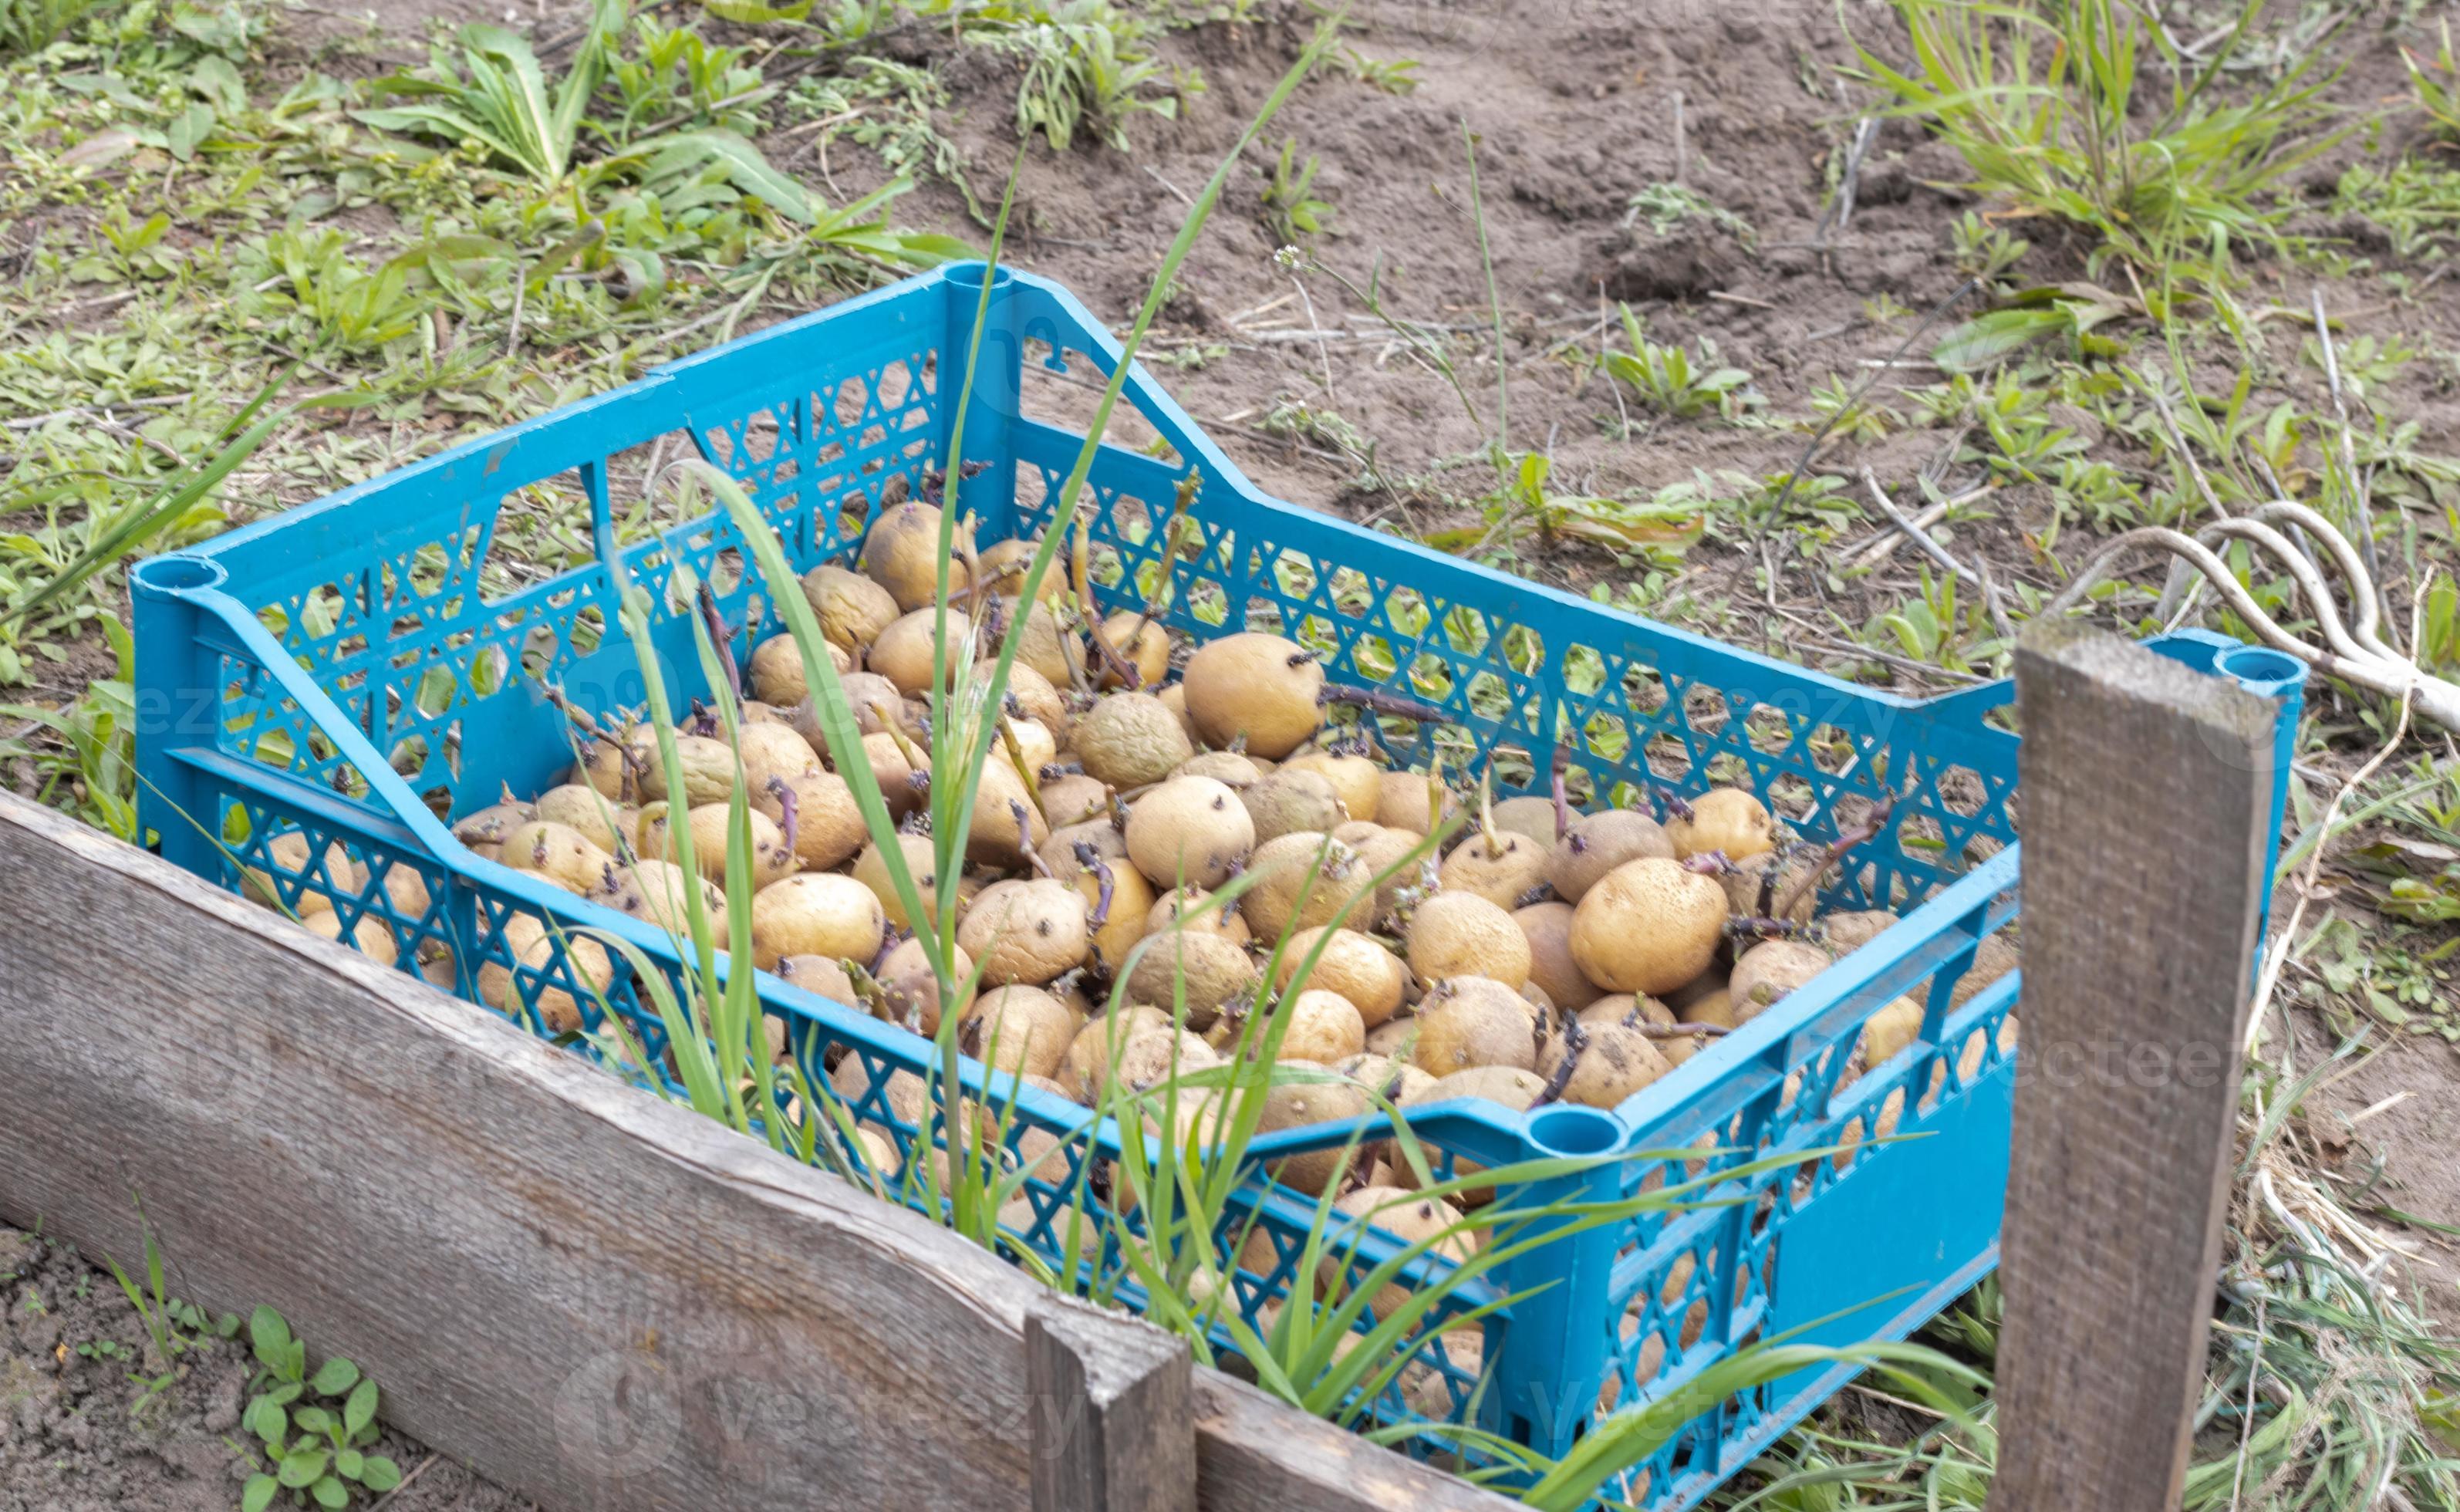 patate da piantare con germogli germogliati in una scatola di plastica.  patate da semi vecchie germogliate. piantine di tuberi di patata. il  concetto di agricoltura e giardinaggio, coltivazione e cura delle verdure.